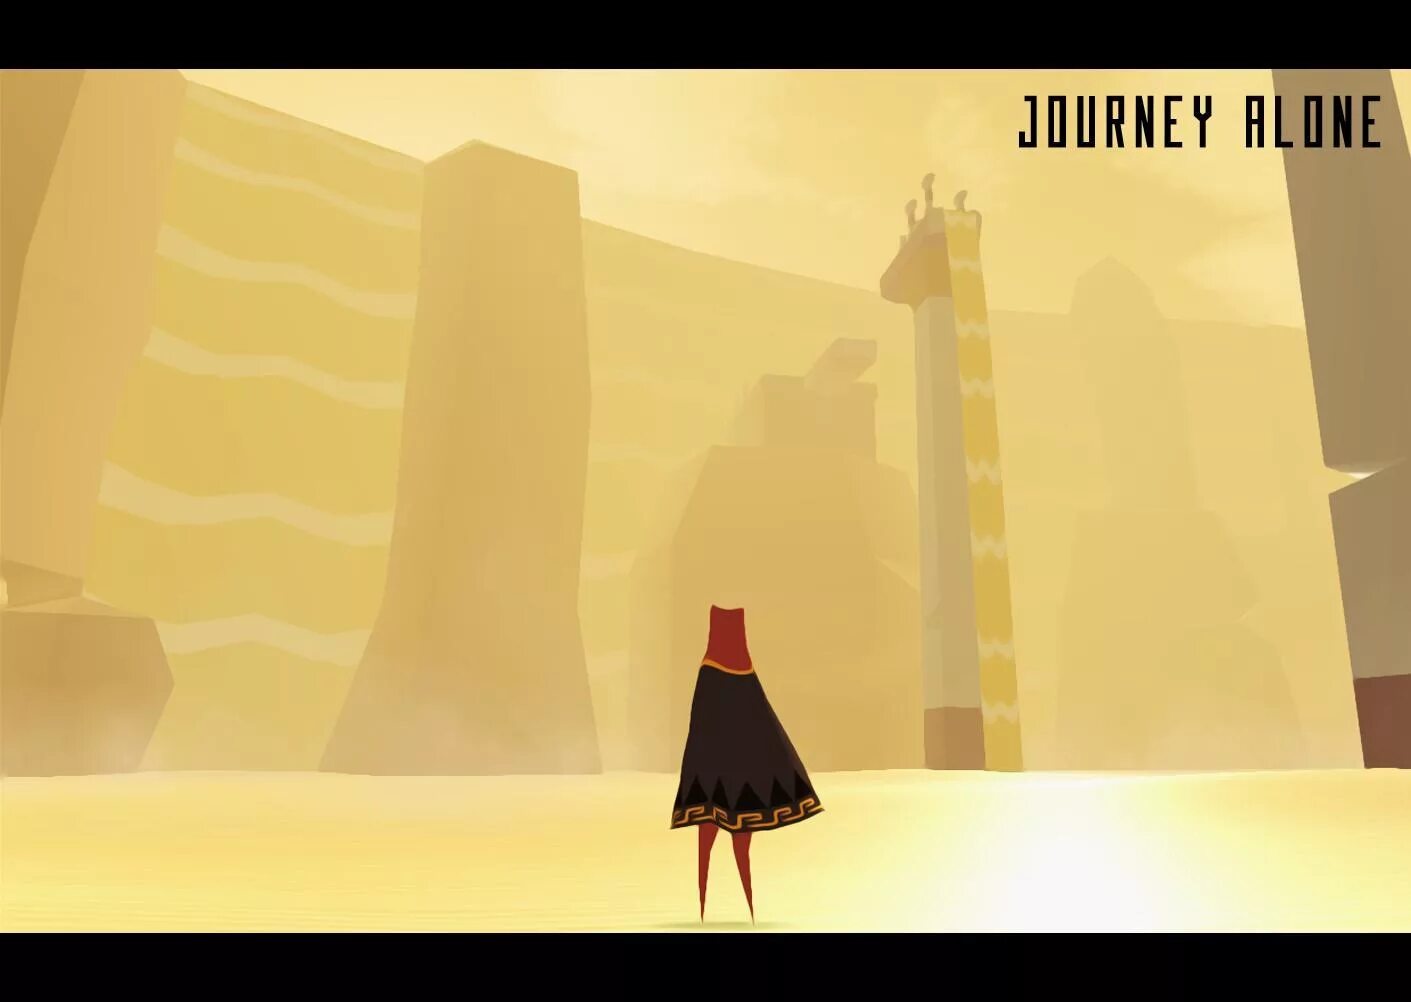 Journey android. Journey игра. Journey игра Android. Джорни игра на андроид. Journey Cat игра на андроид.